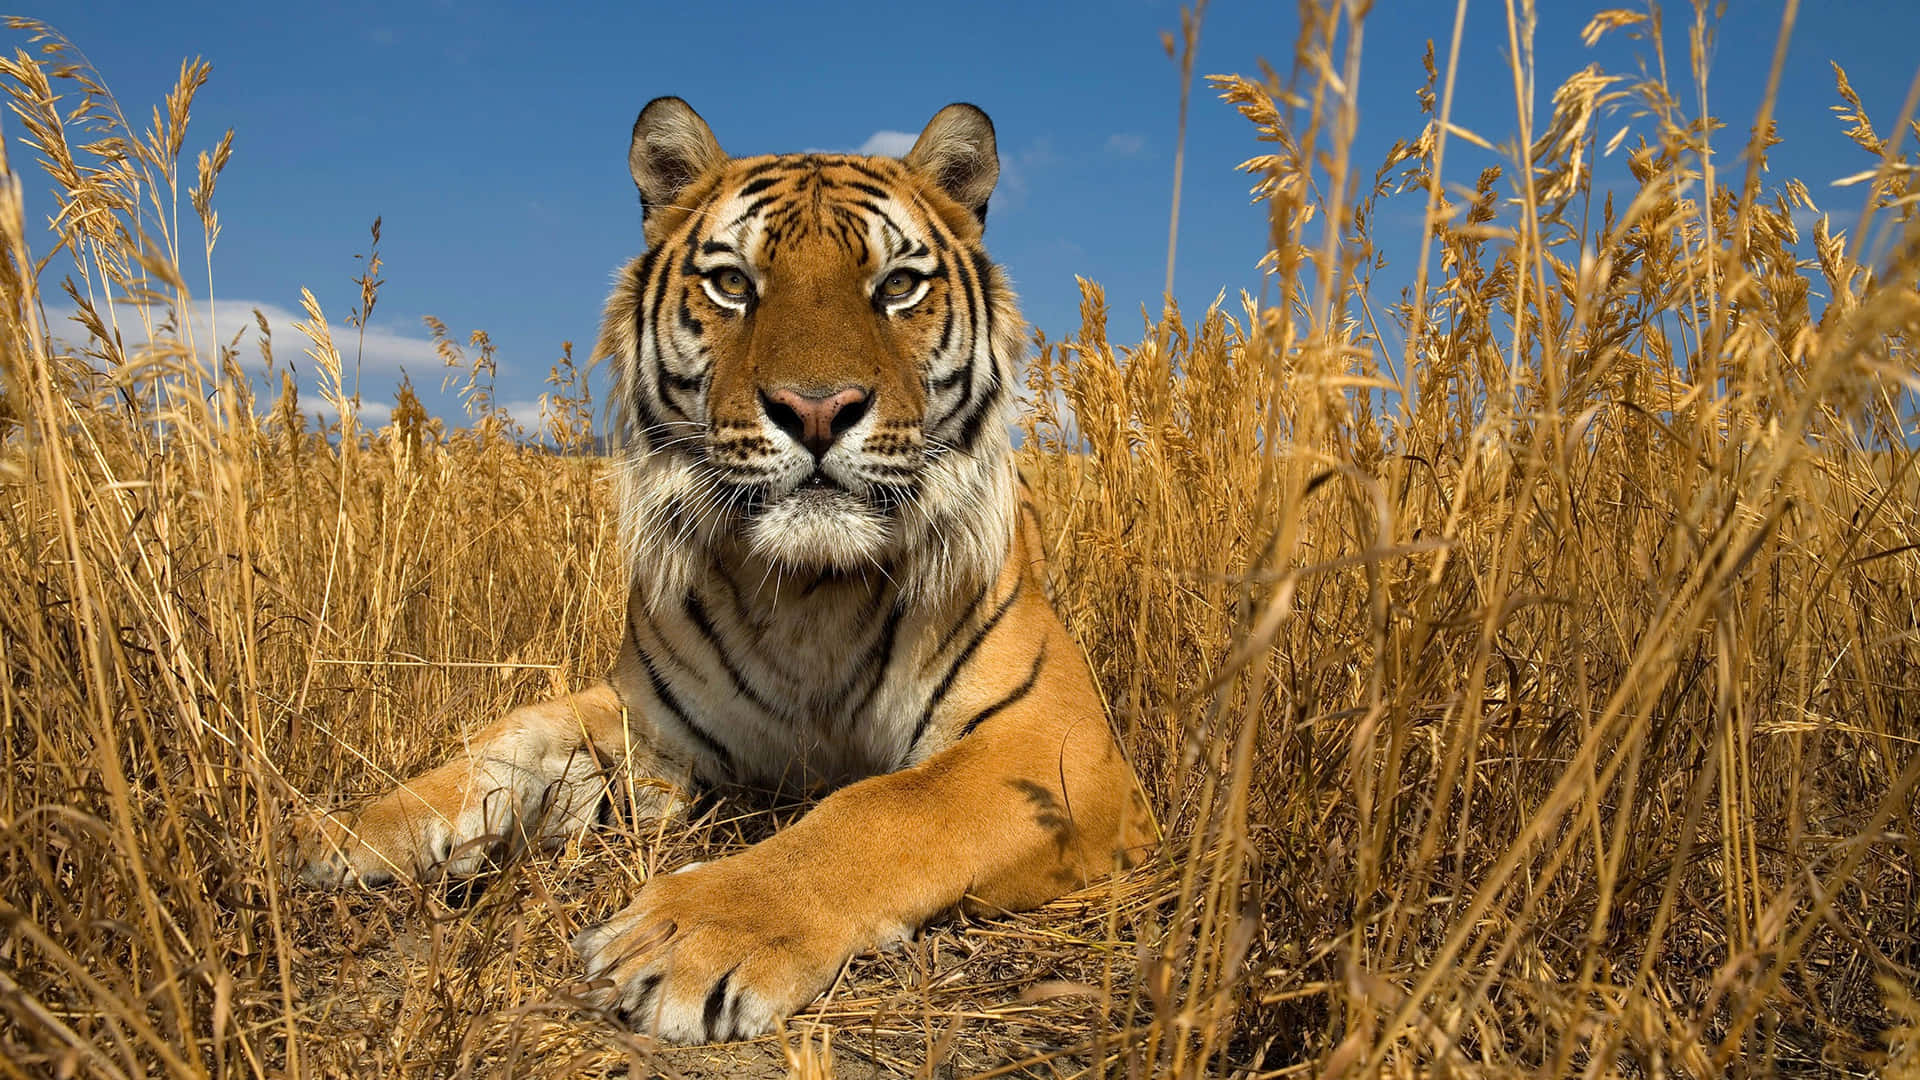 Imagende Animales Salvajes, Tigre En La Hierba Alta